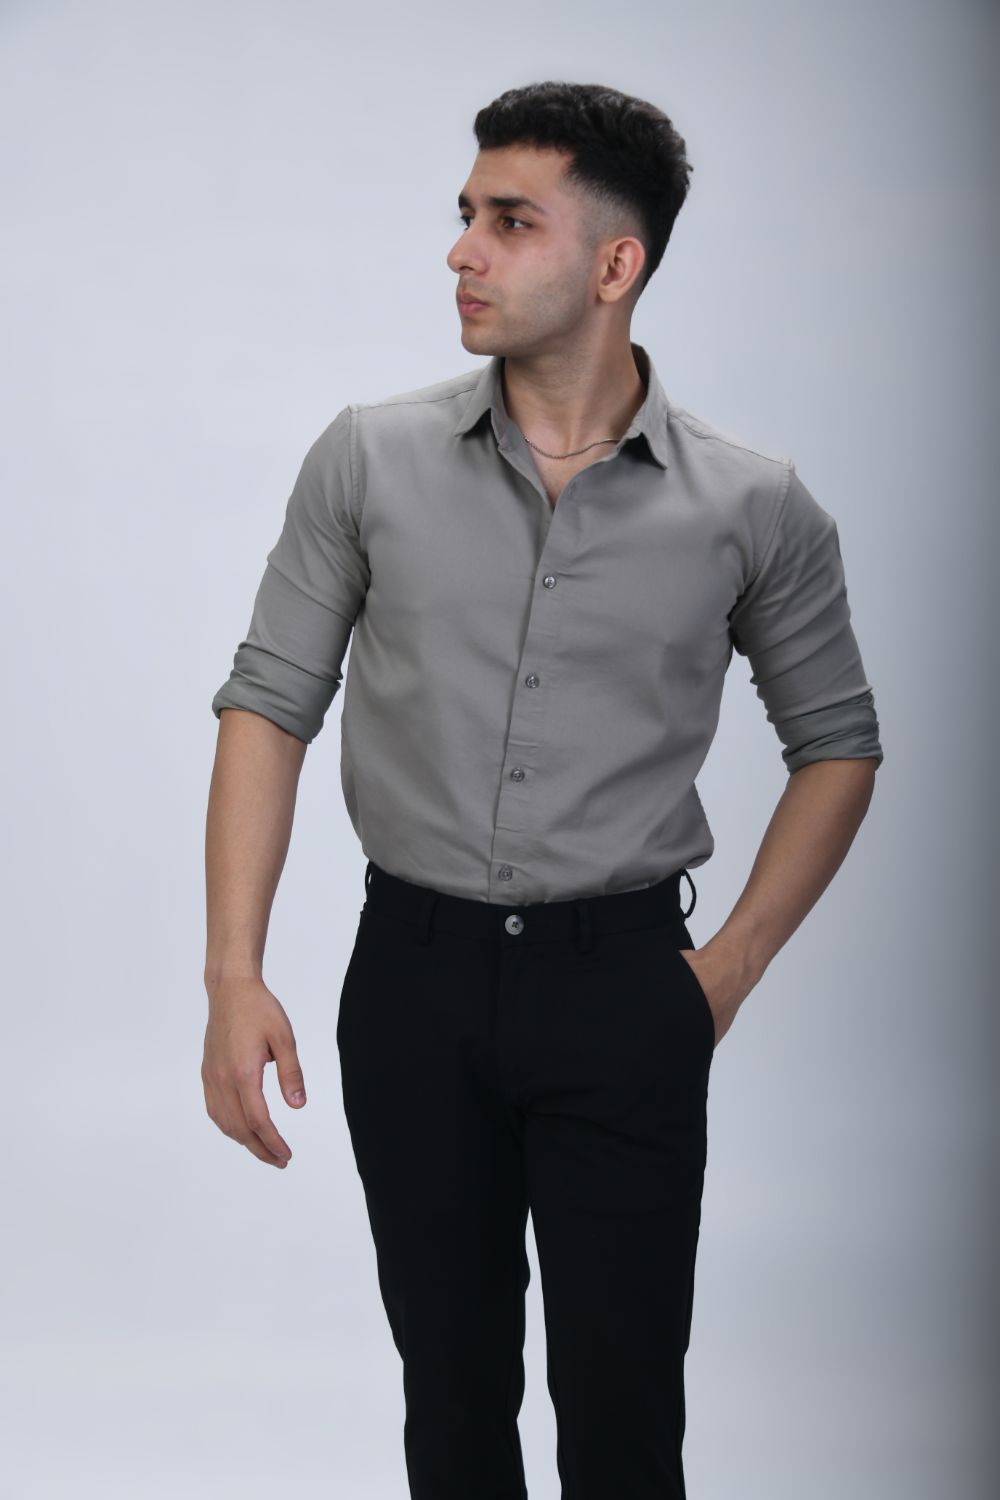 Cotton Shirts For Men | Linen Shirts For Men - LeWogle